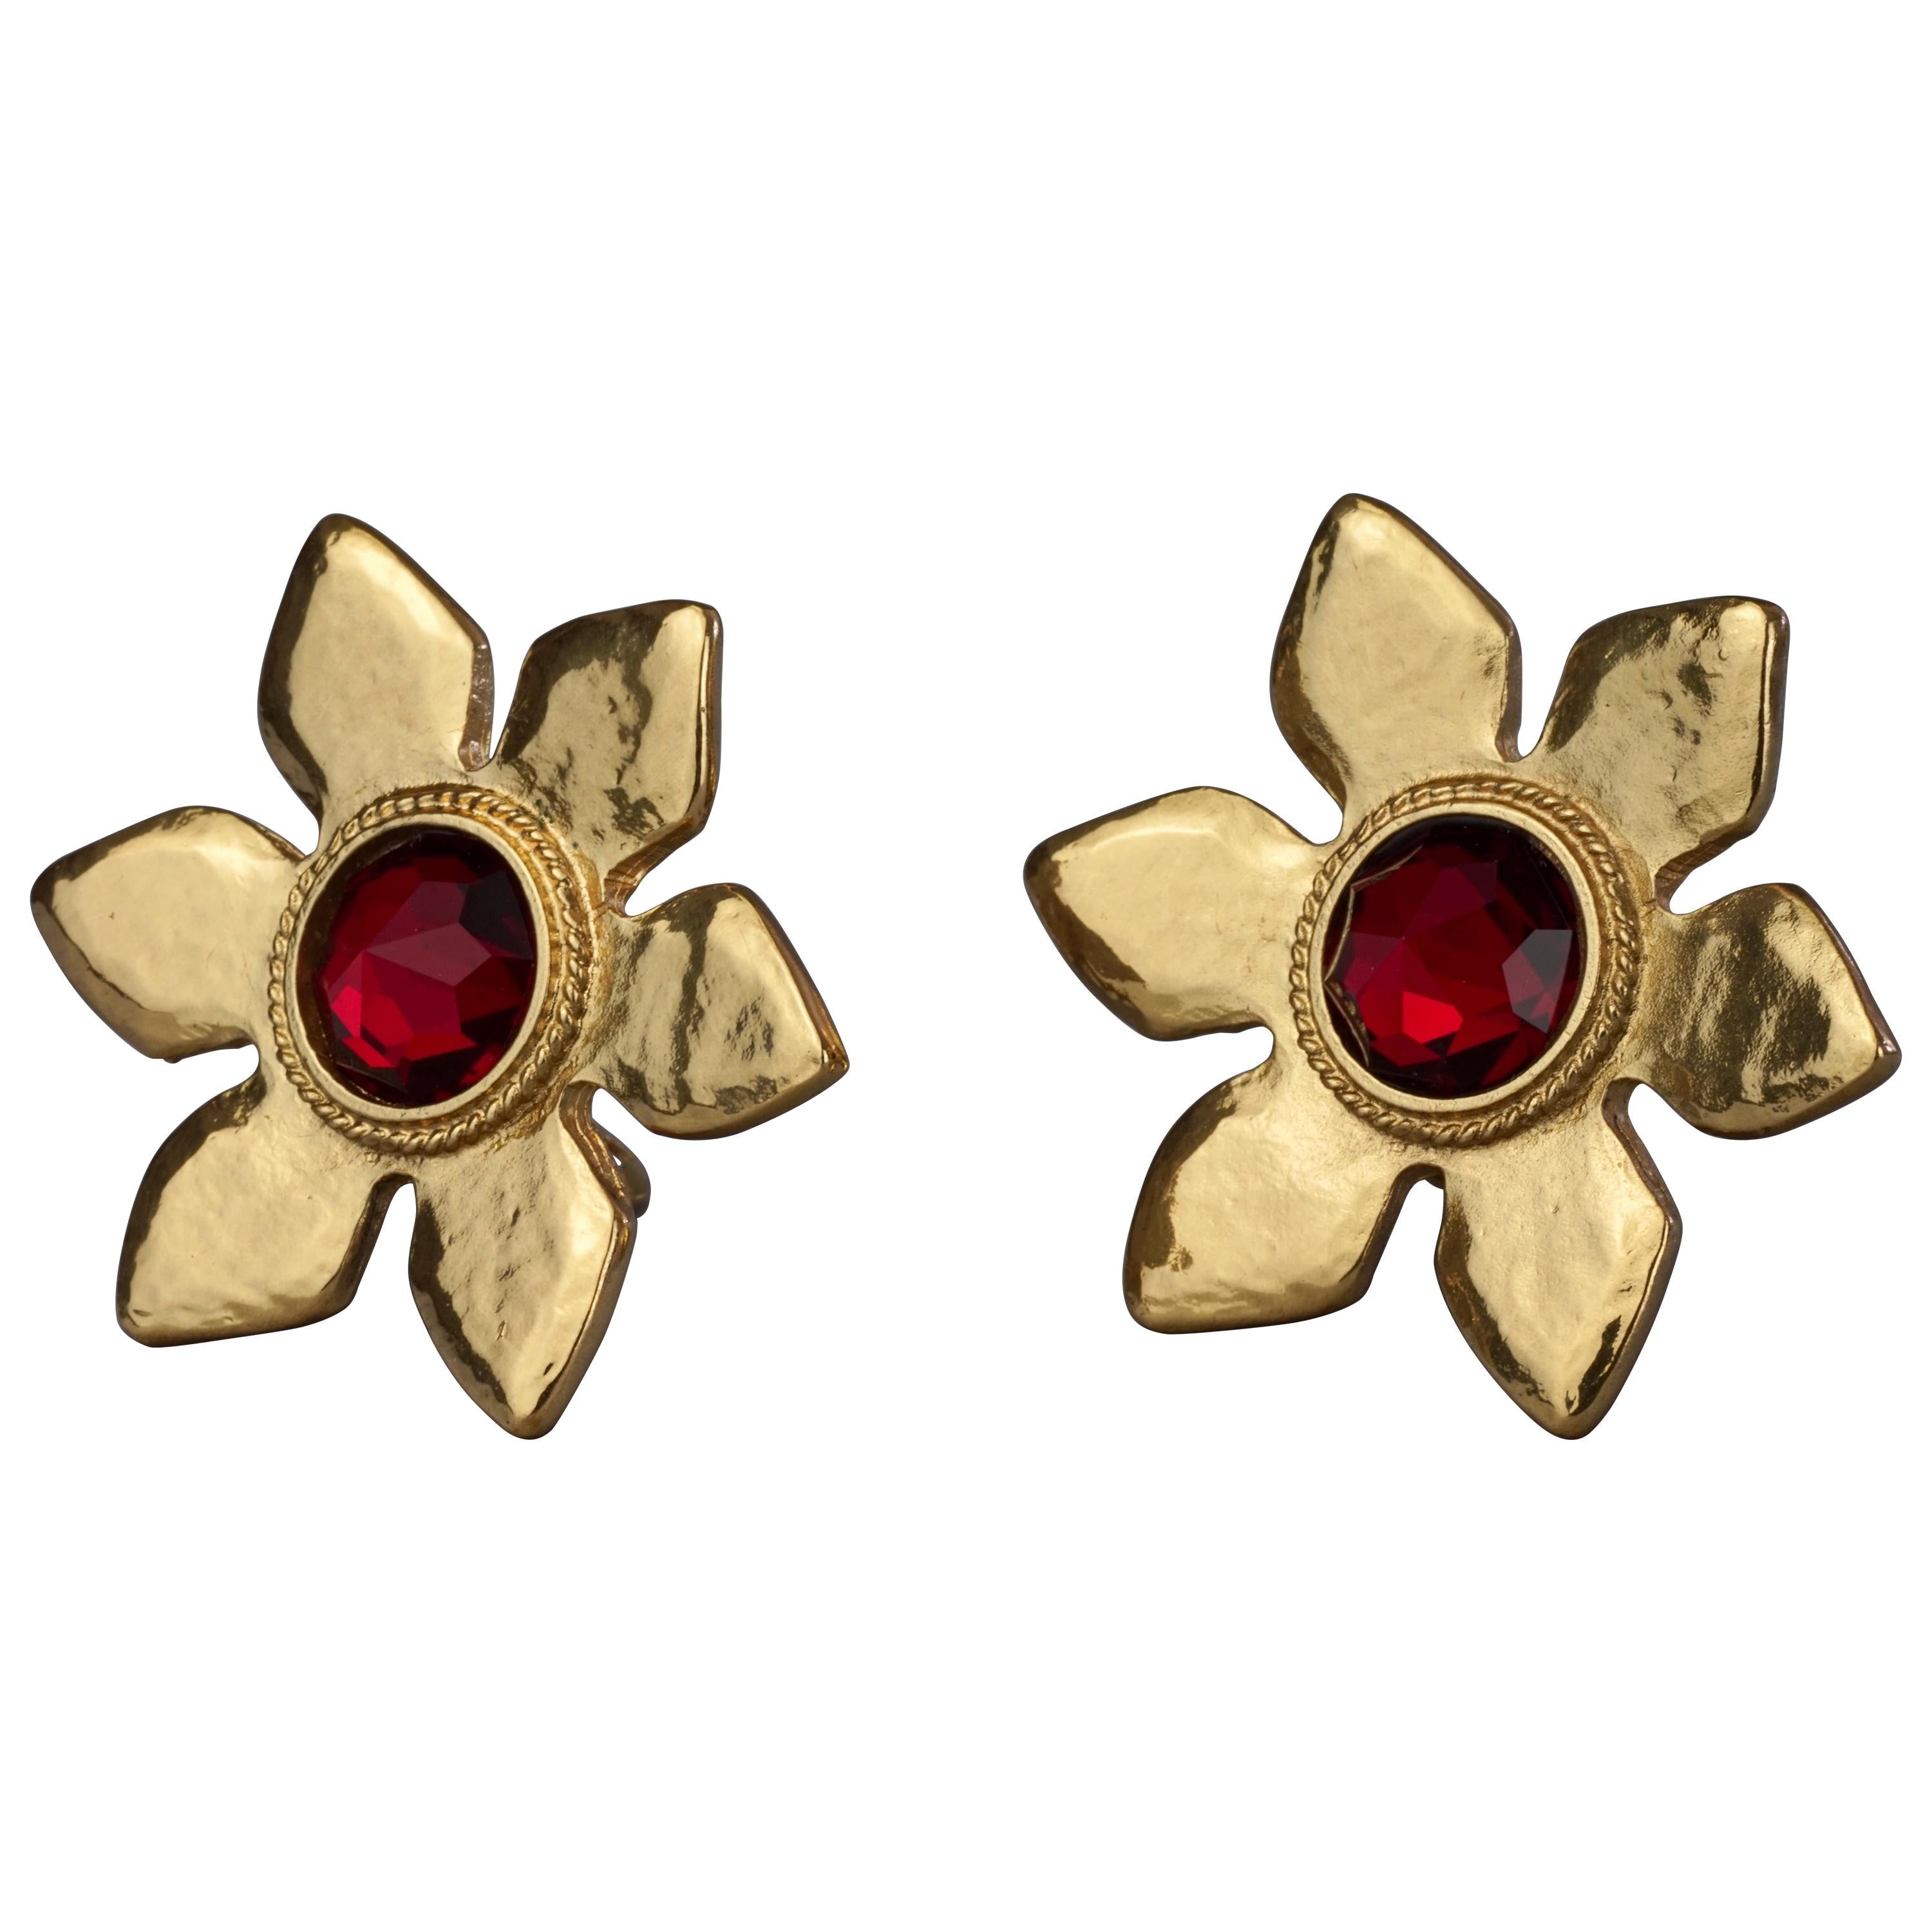 Vintage Massive YVES SAINT LAURENT Ysl Flower Ruby Red Stone Earrings